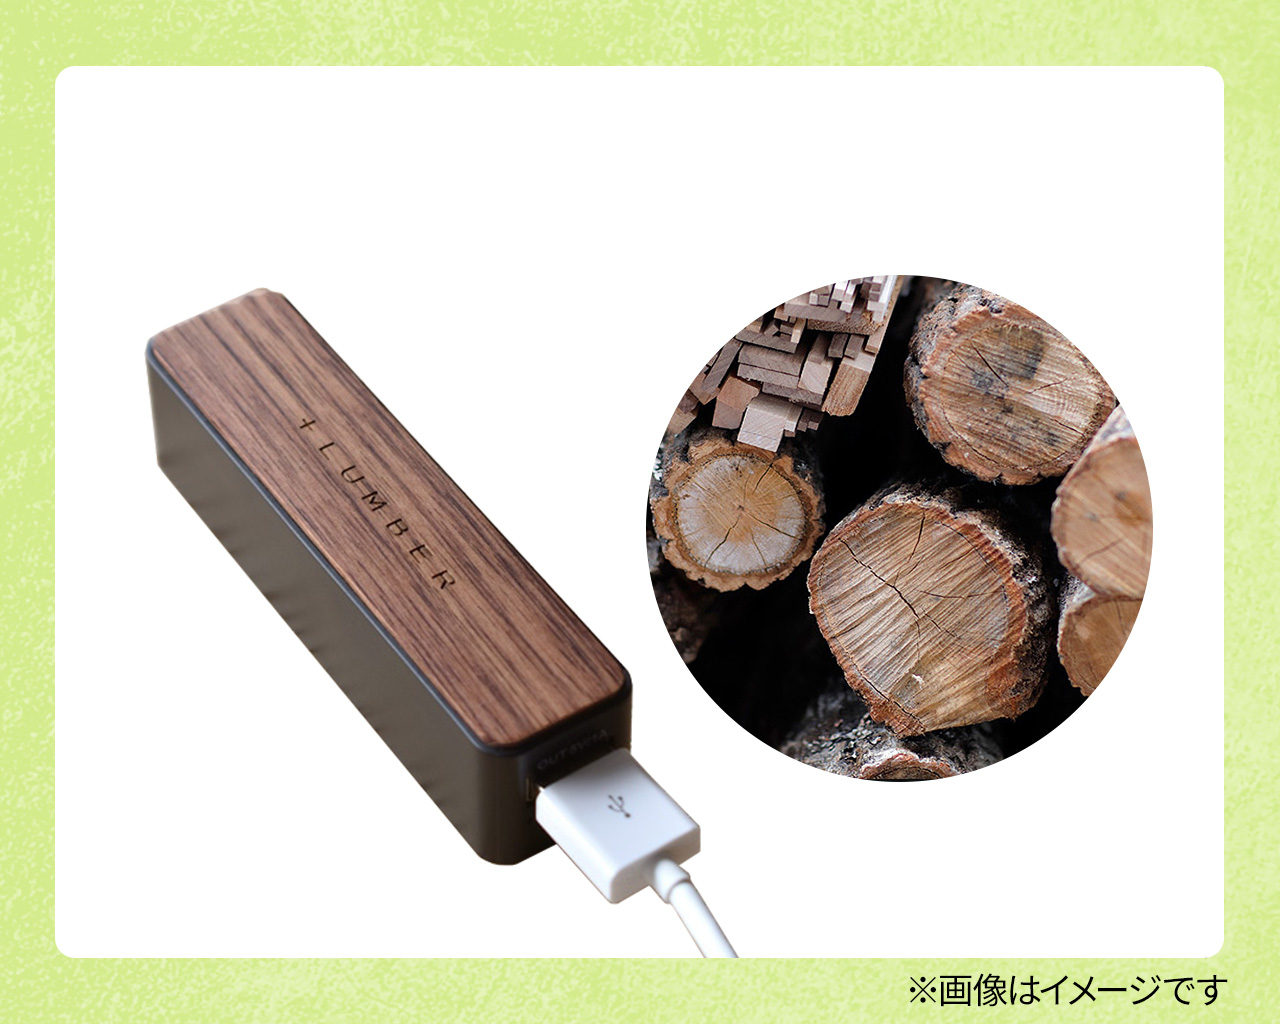 【10ポイントで応募】Hacoa 木製モバイルバッテリー